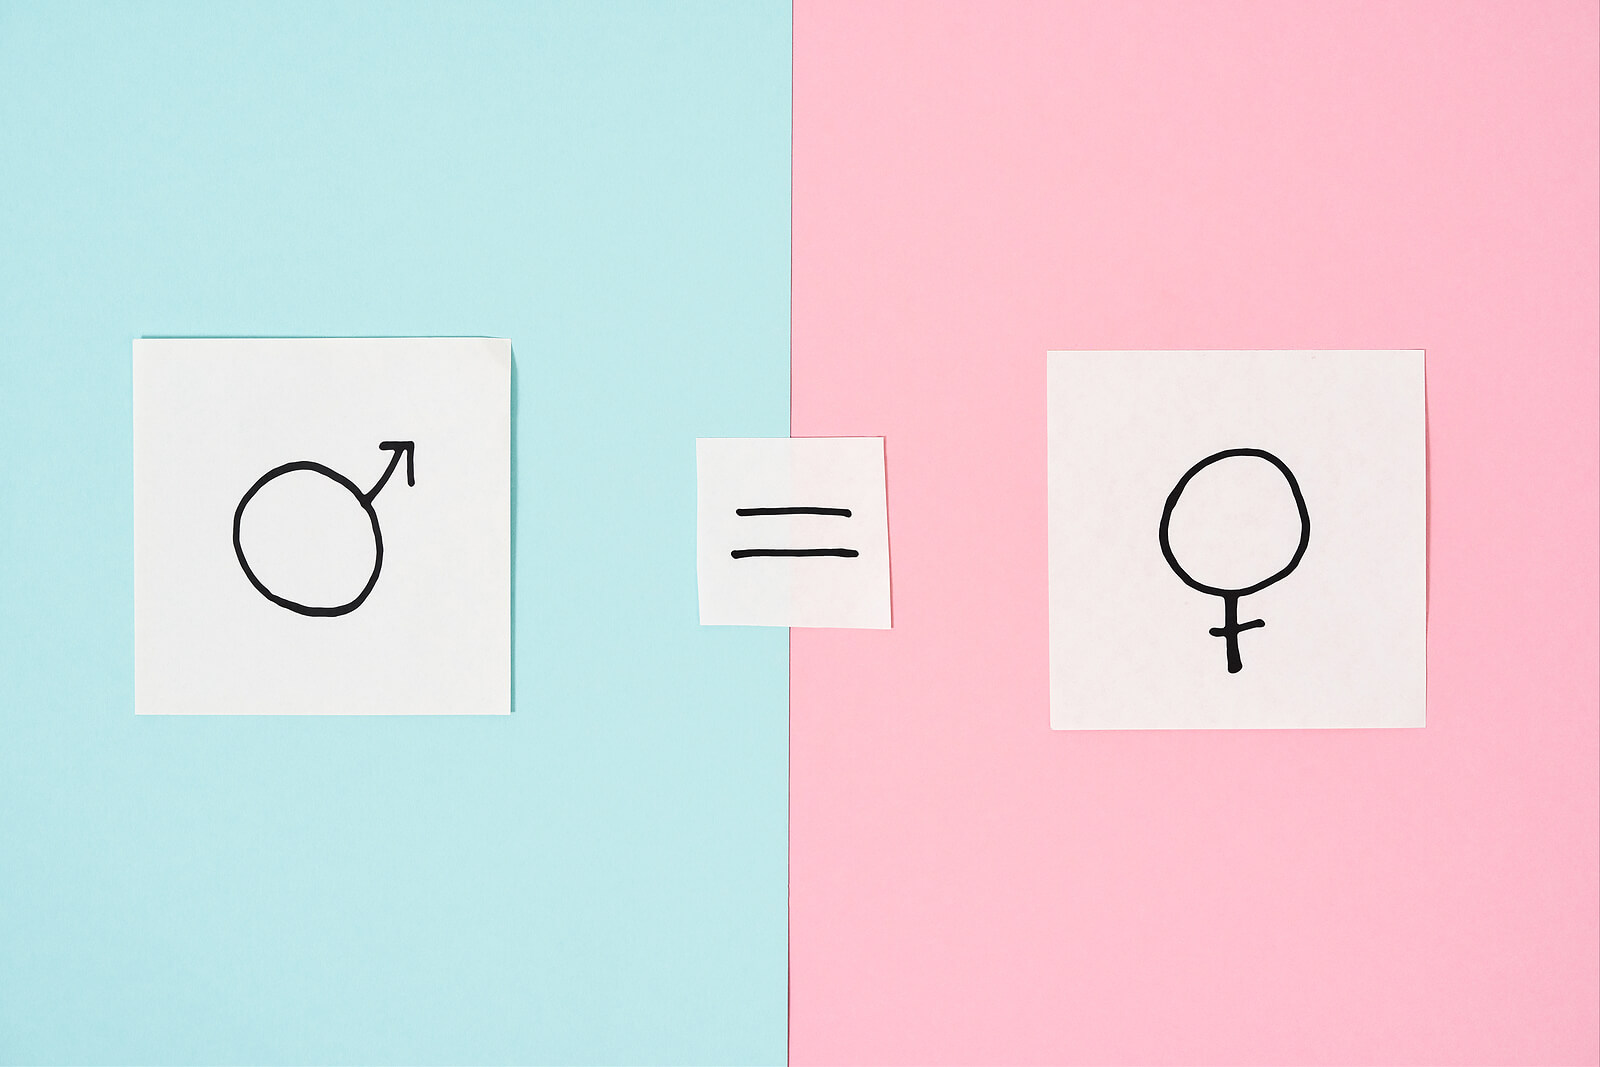 Symbolet for mann tegnet over en blå bakgrunn til venstre, symbolet for kvinne tegnet over en rosa bakgrunn til høyre, og et like symbol tegnet i midten.